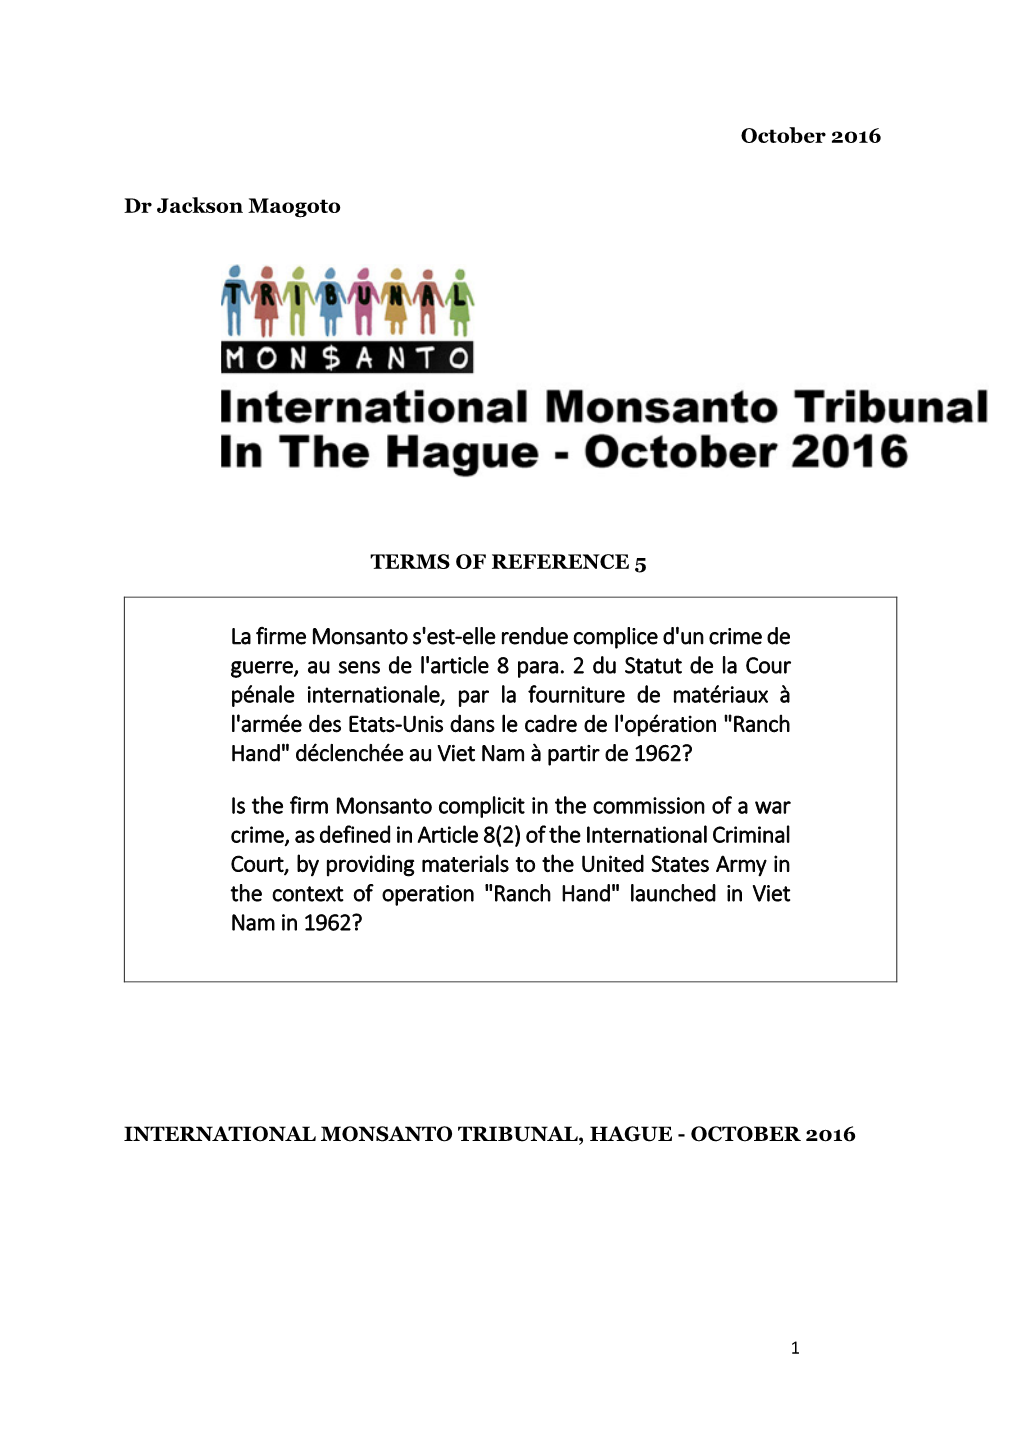 La Firme Monsanto S'est-Elle Rendue Complice D'un Crime De Guerre, Au Sens De L'article 8 Para